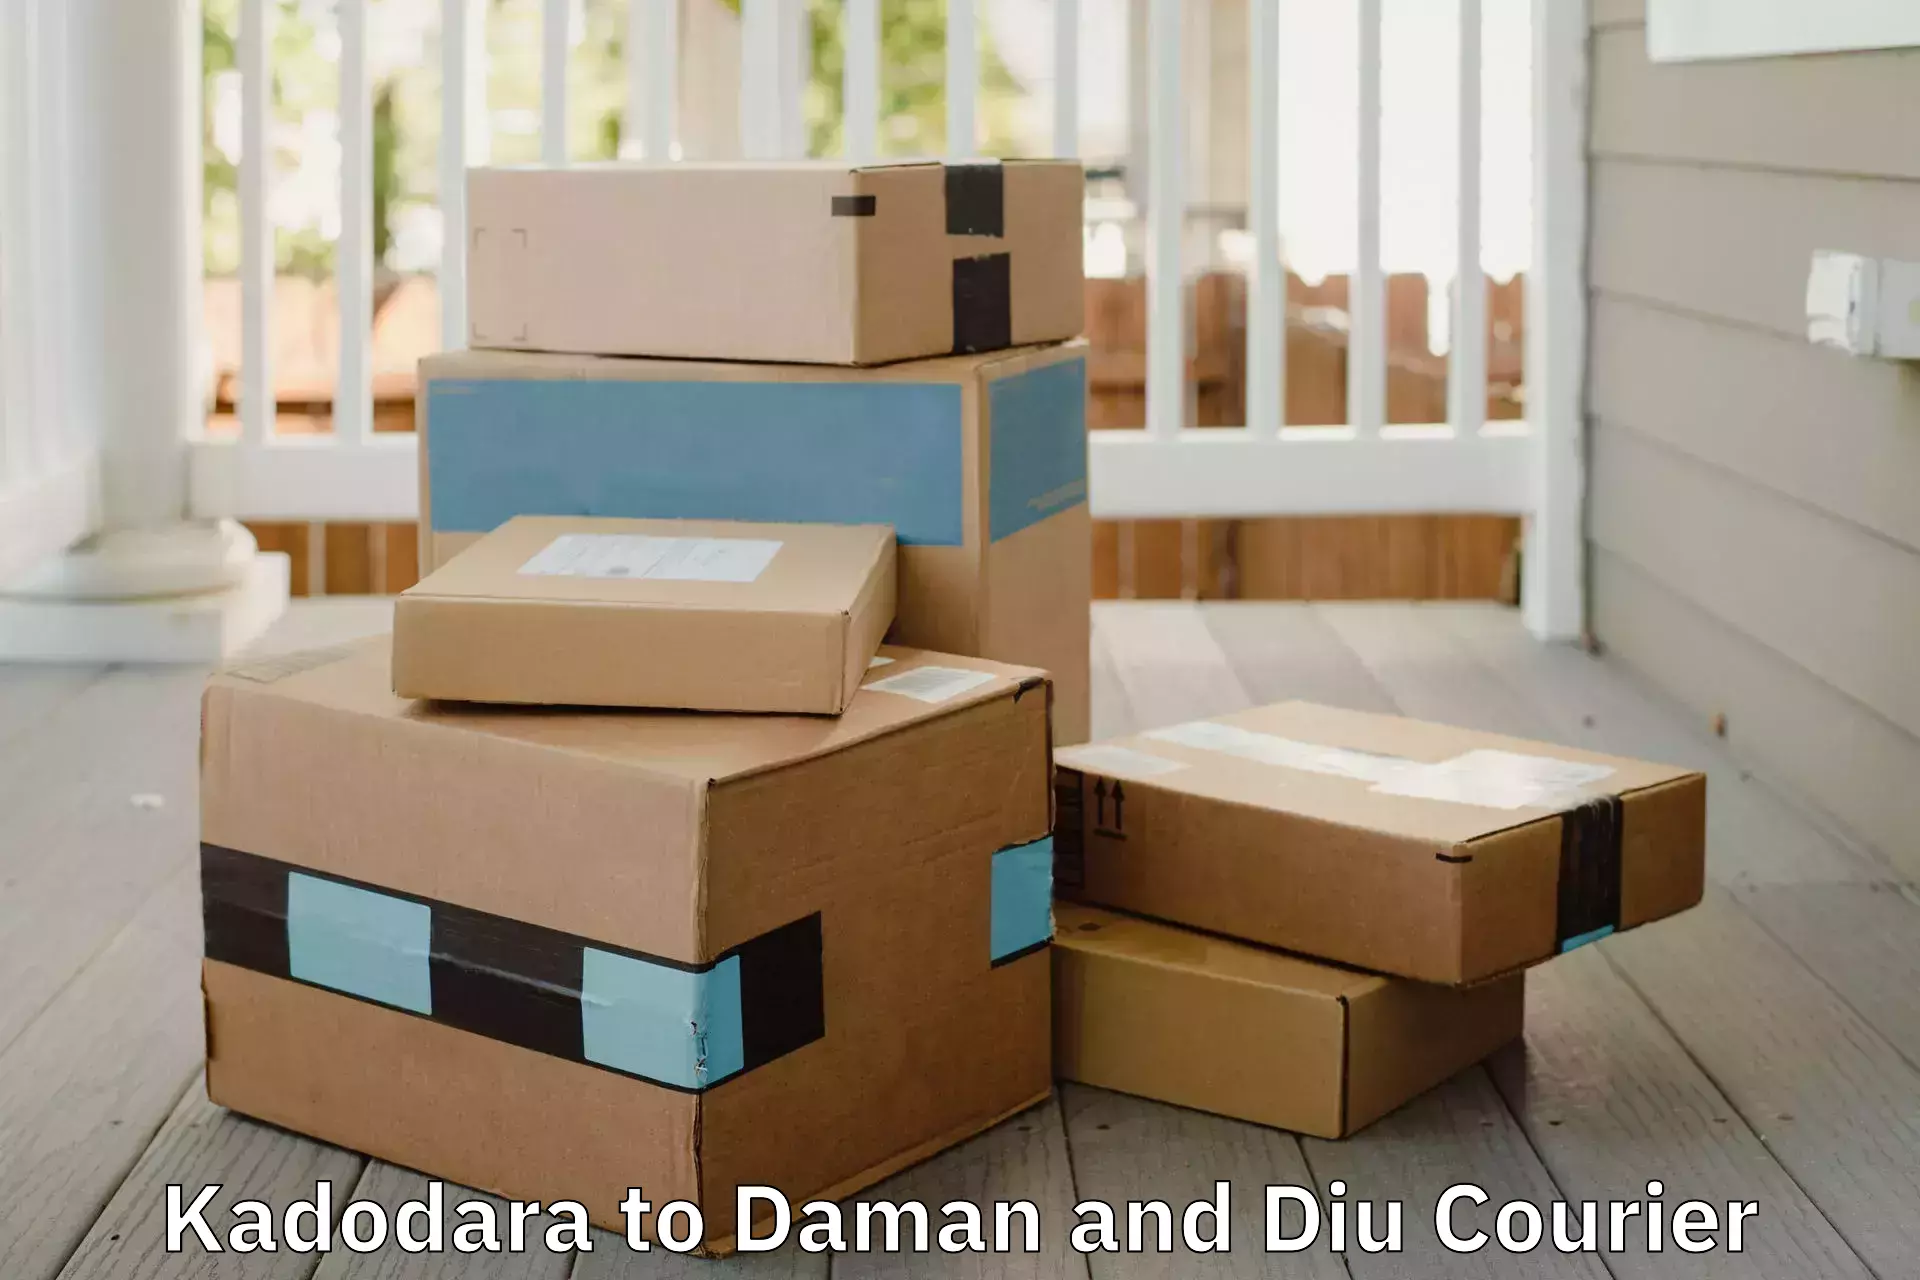 Professional moving assistance Kadodara to Diu